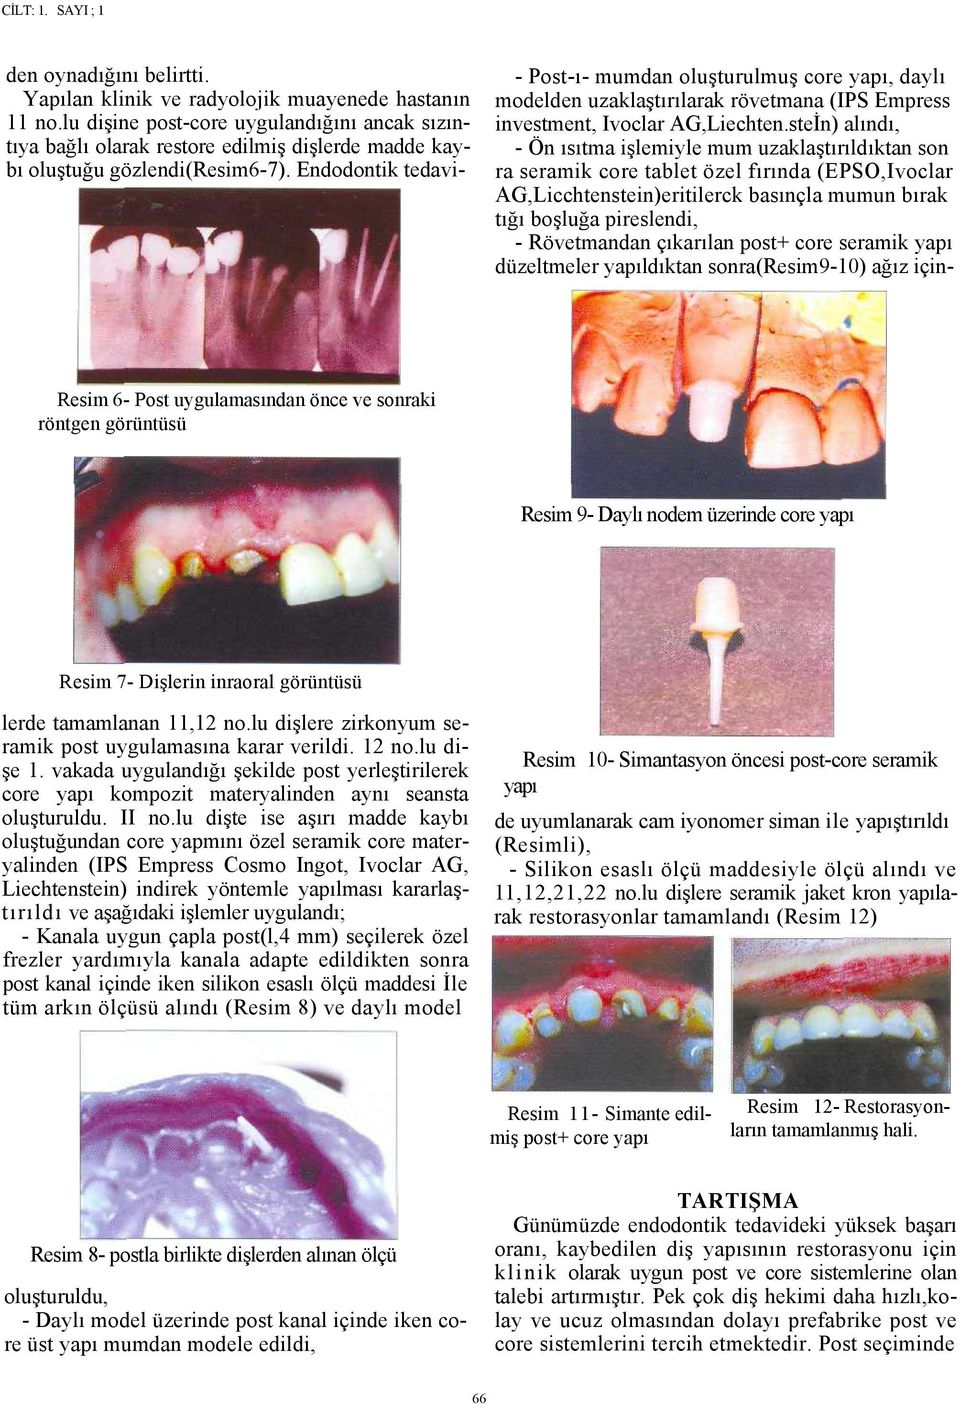 Endodontik tedavi- - Post-ı- mumdan oluşturulmuş core yapı, daylı modelden uzaklaştırılarak rövetmana (IPS Empress investment, Ivoclar AG,Liechten.